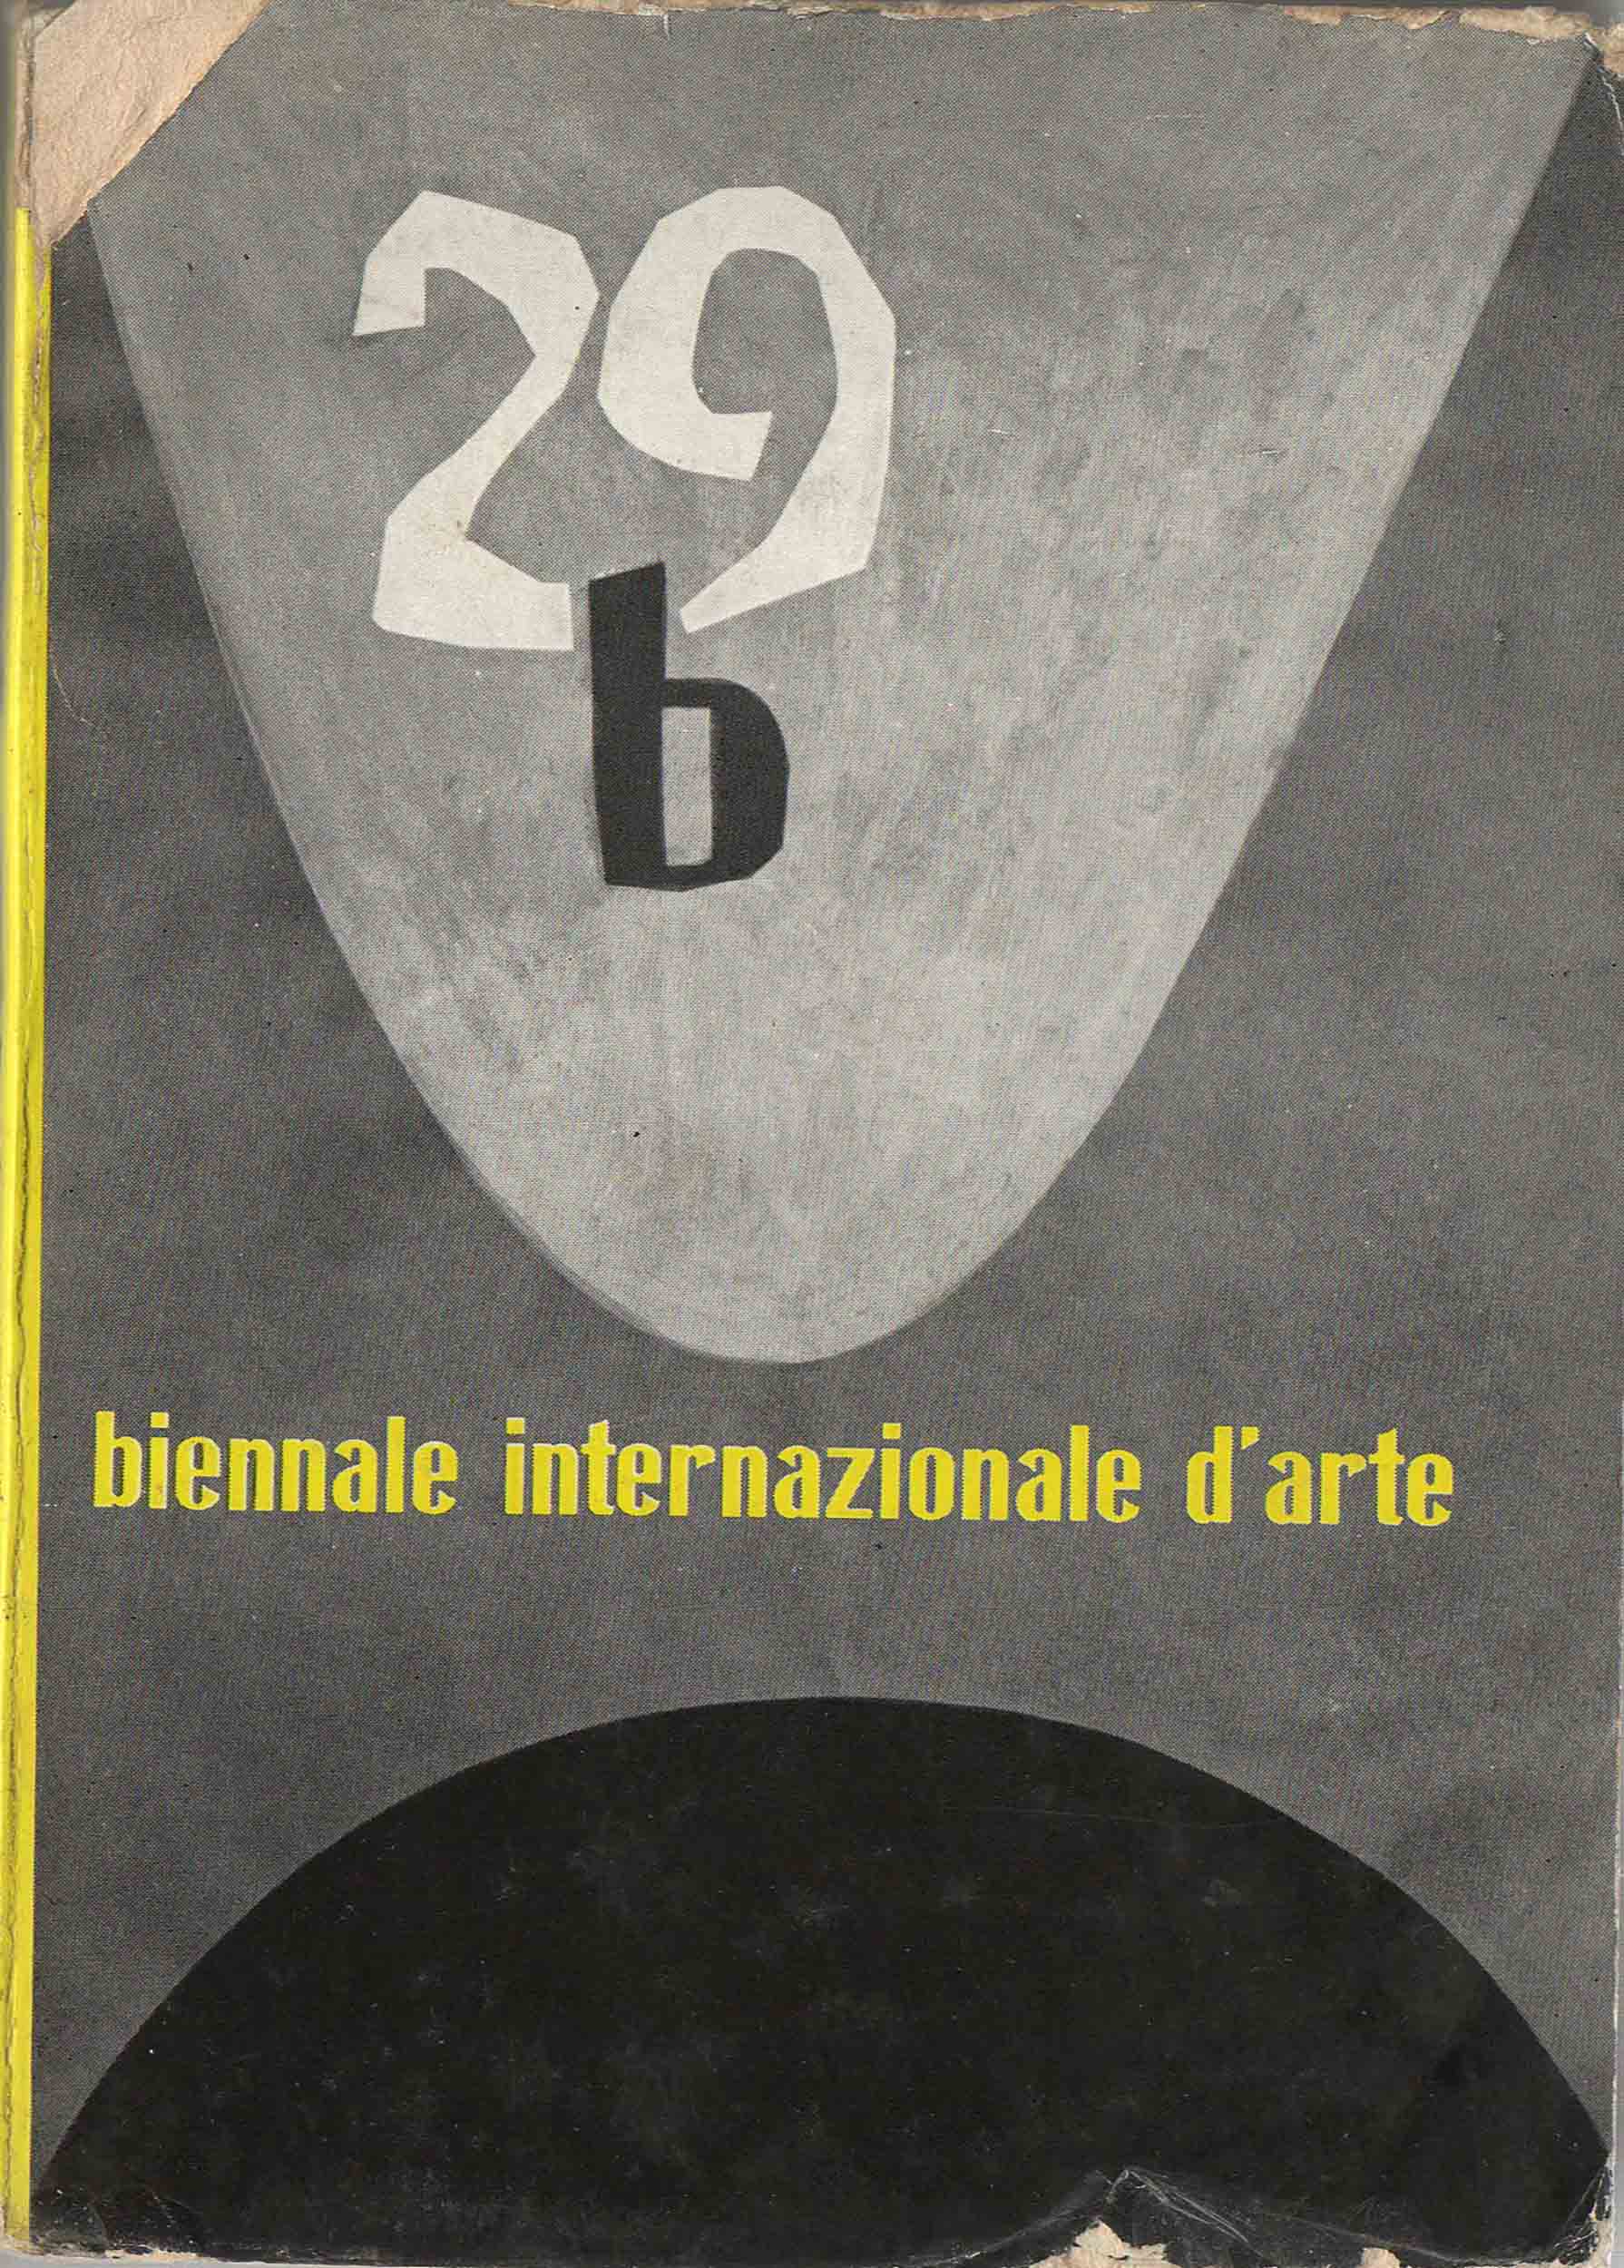 XXIX Biennale di Venezia